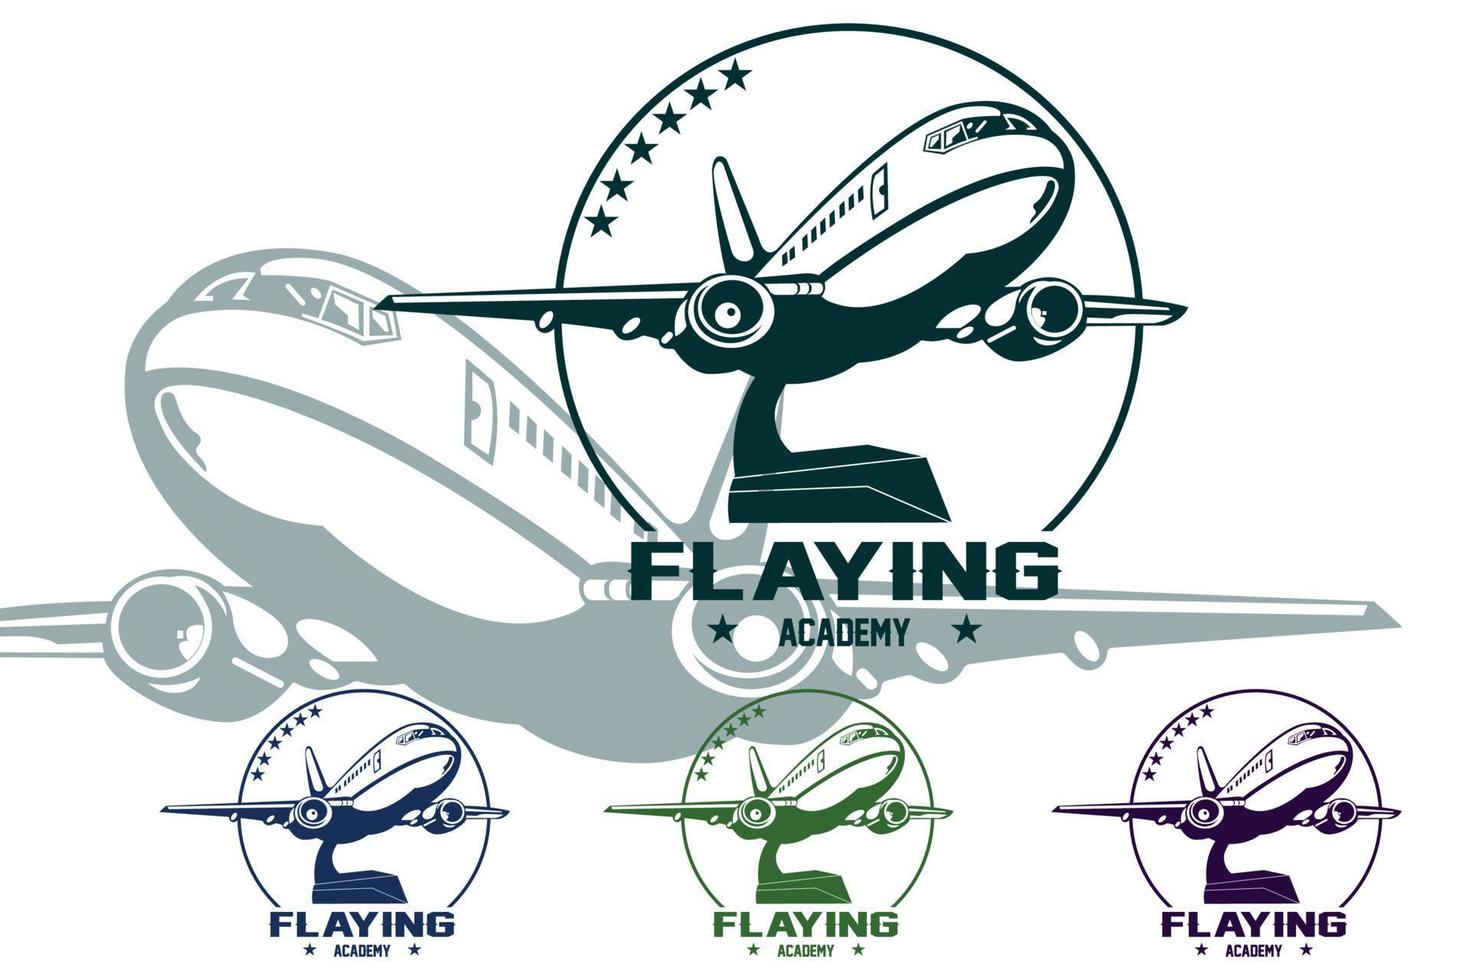 icona del logo dell'aeroplano, in bilico nell'aria, design aziendale, maglietta, serigrafia, adesivo, veicolo alato vettore